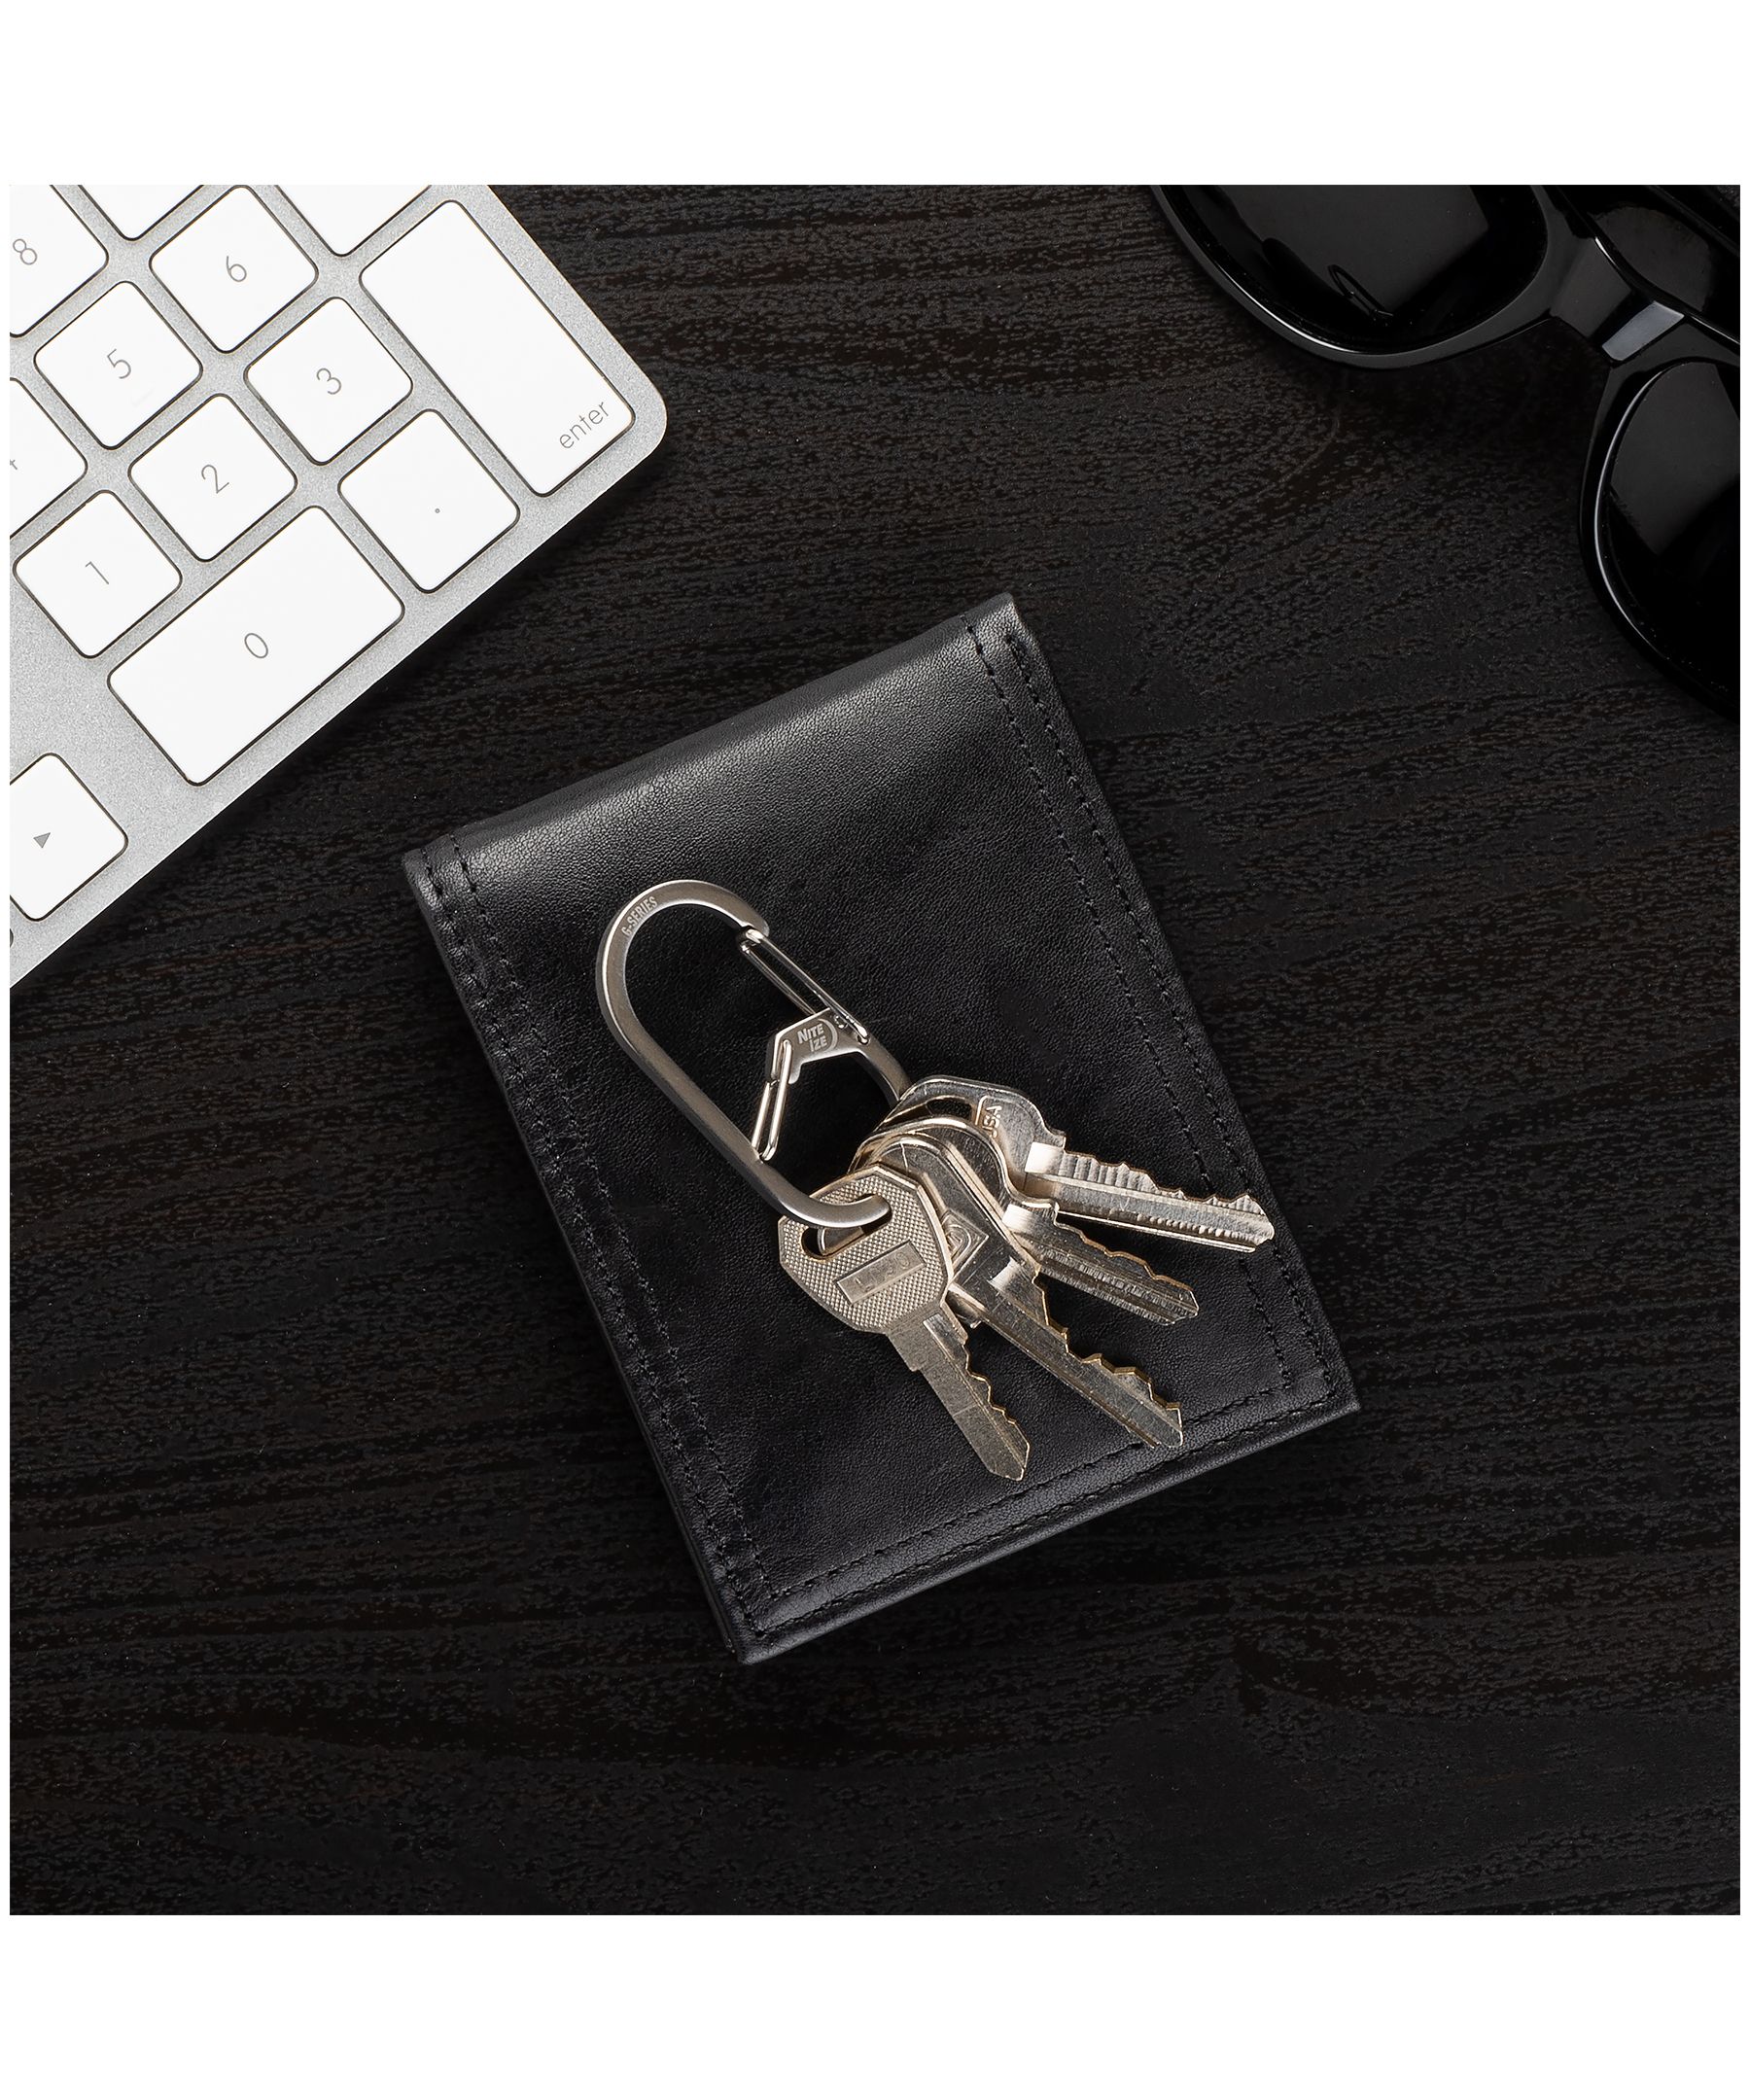 Porte-clés Nite Ize, porte-clés mousqueton en acier inoxydable avec 6  mousquetons en S en plastique coloré pour tenir + identifier les clés,  multicolore brillant 